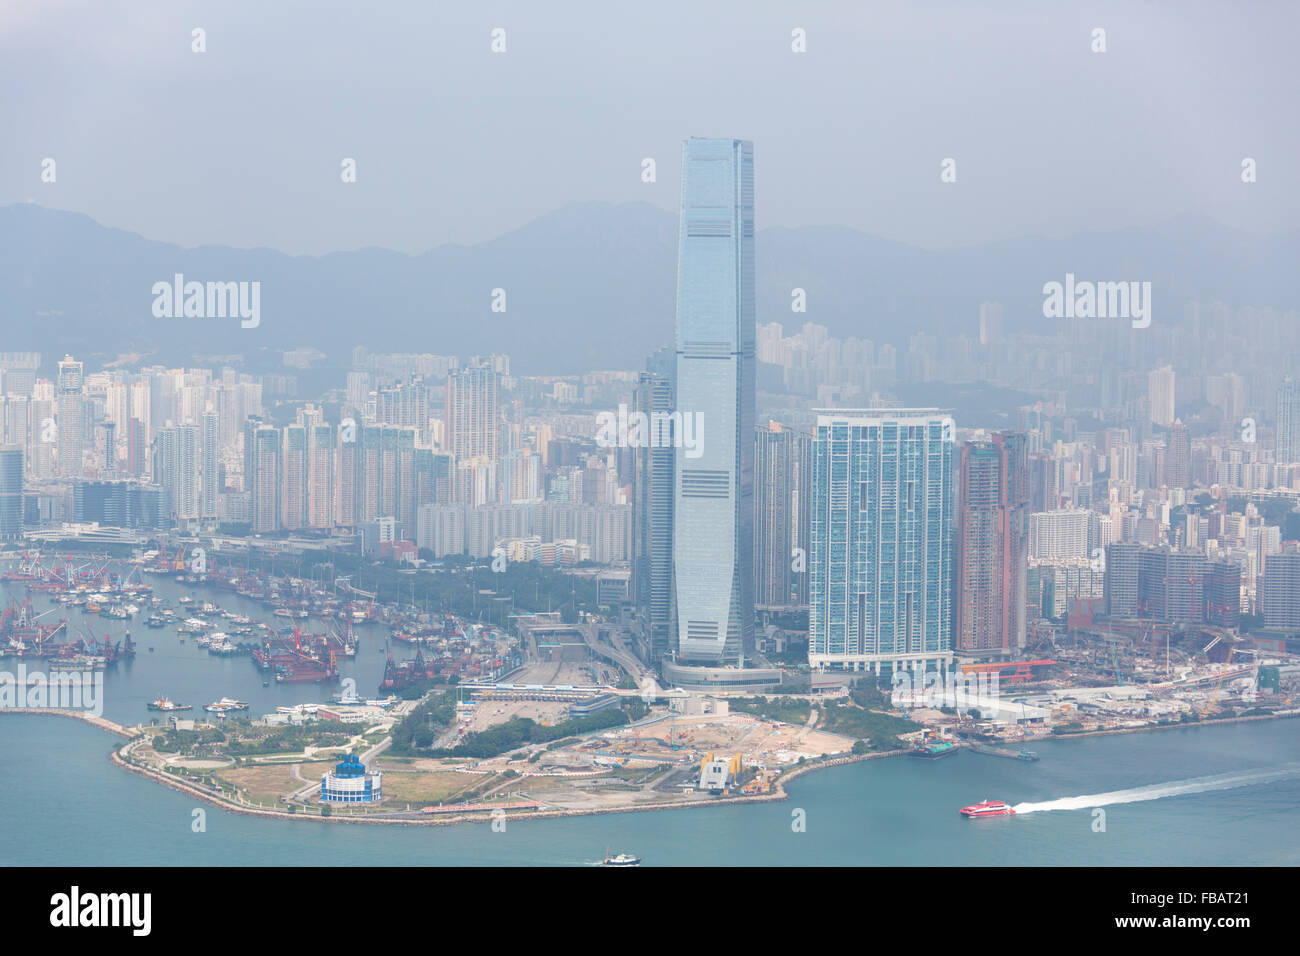 Gratte-ciel du port de Victoria, l'île de Hong Kong Chine Asie vu vue depuis le pic Bevedere sommet. Banque D'Images